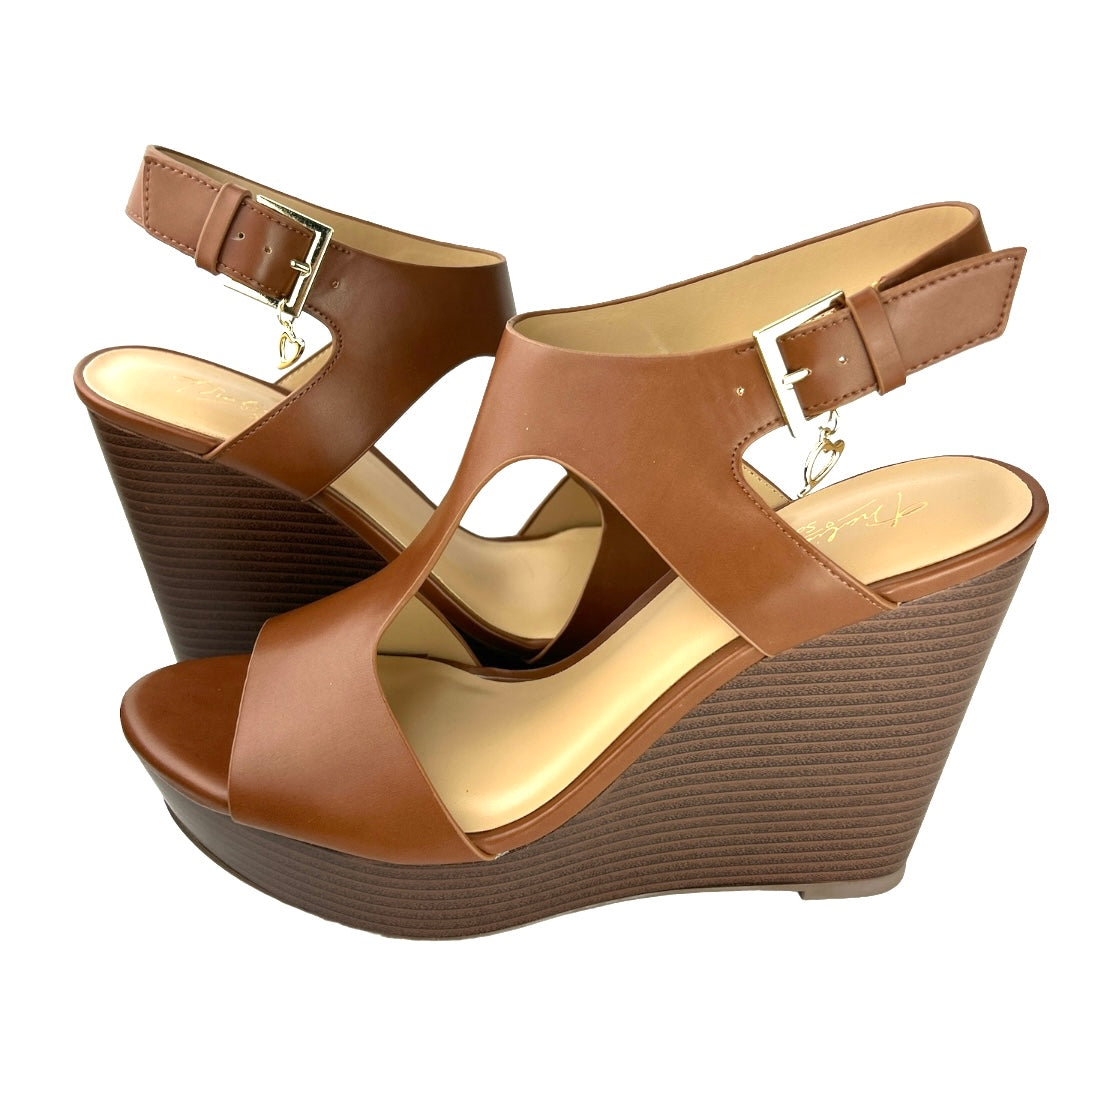 VALLERIP Wedge Sandals Women's Shoes